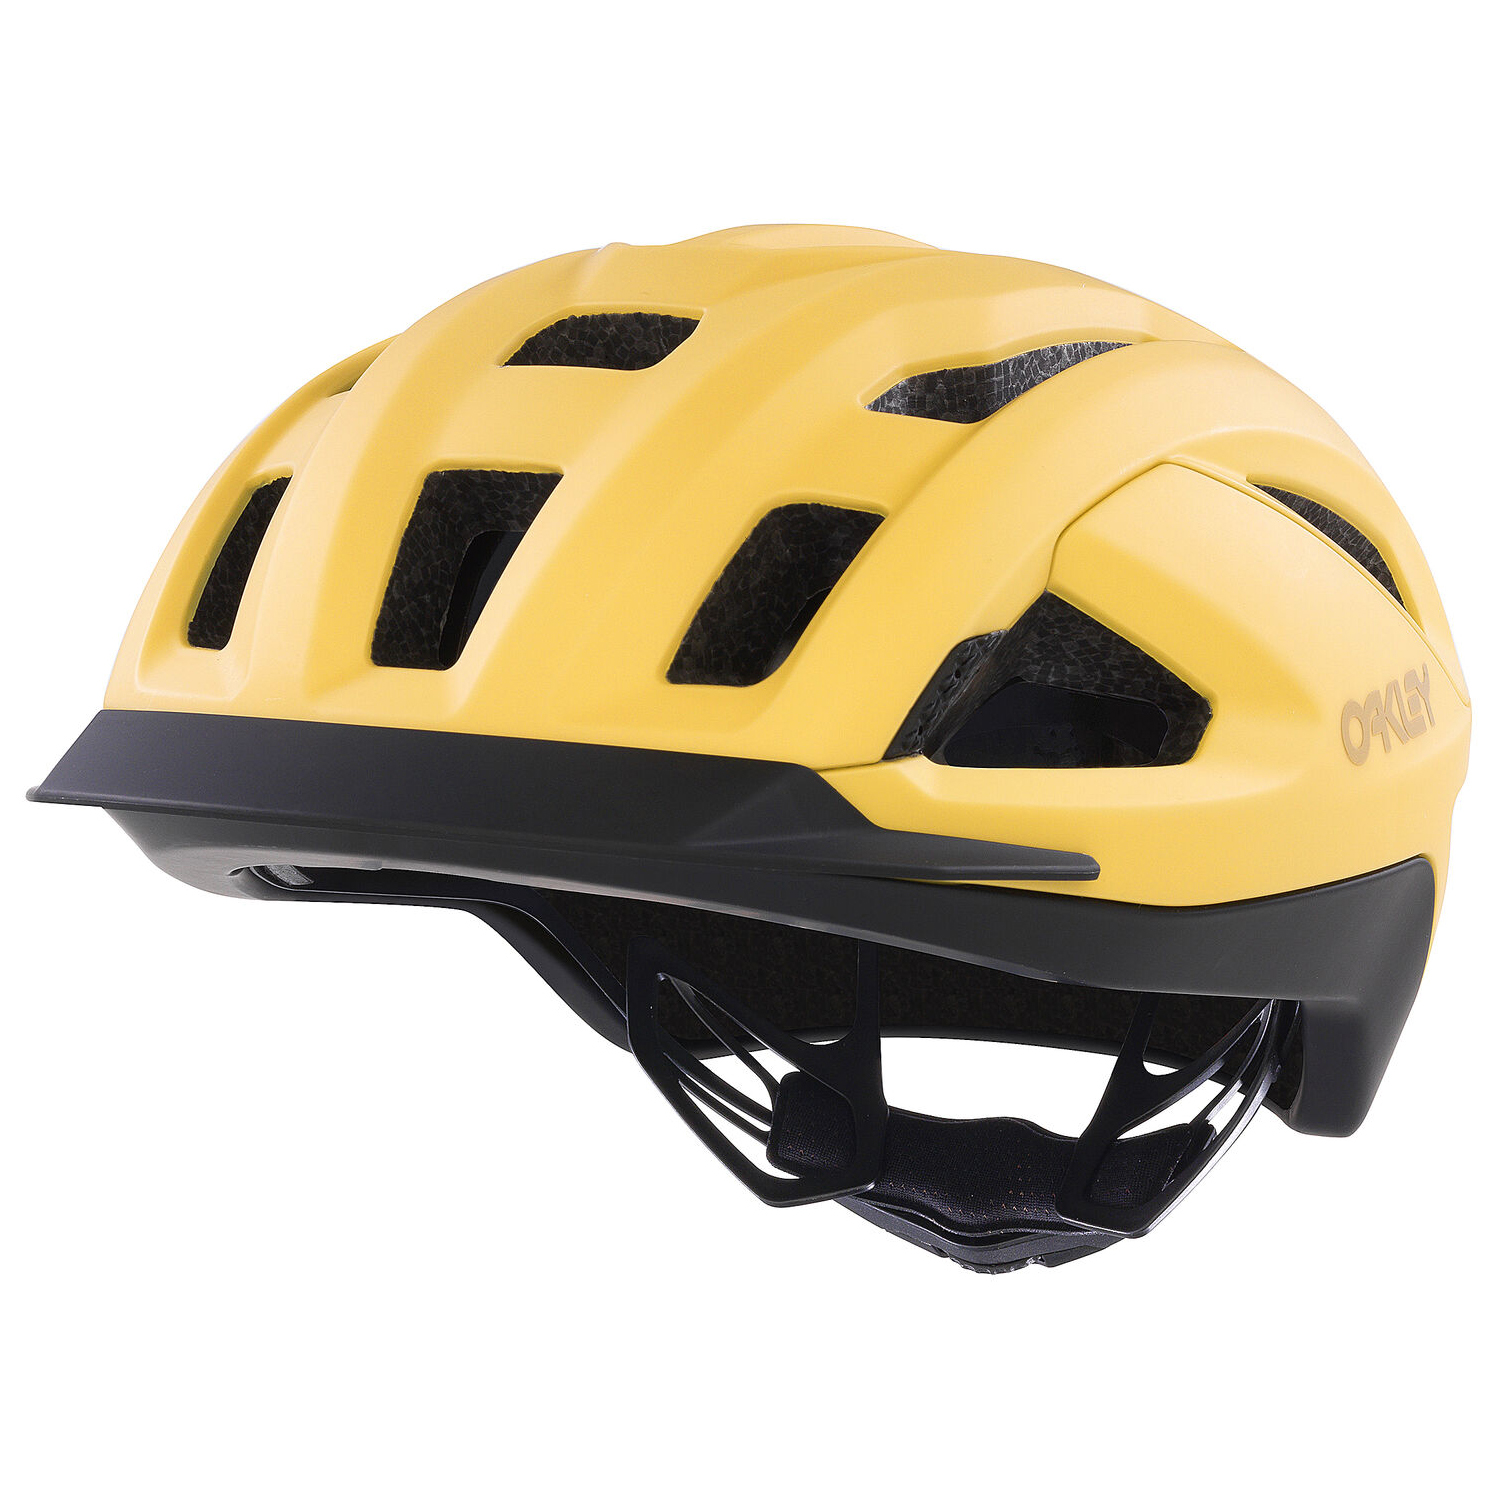 Велосипедный шлем Oakley ARO3 Allroad, матовый светлый карри